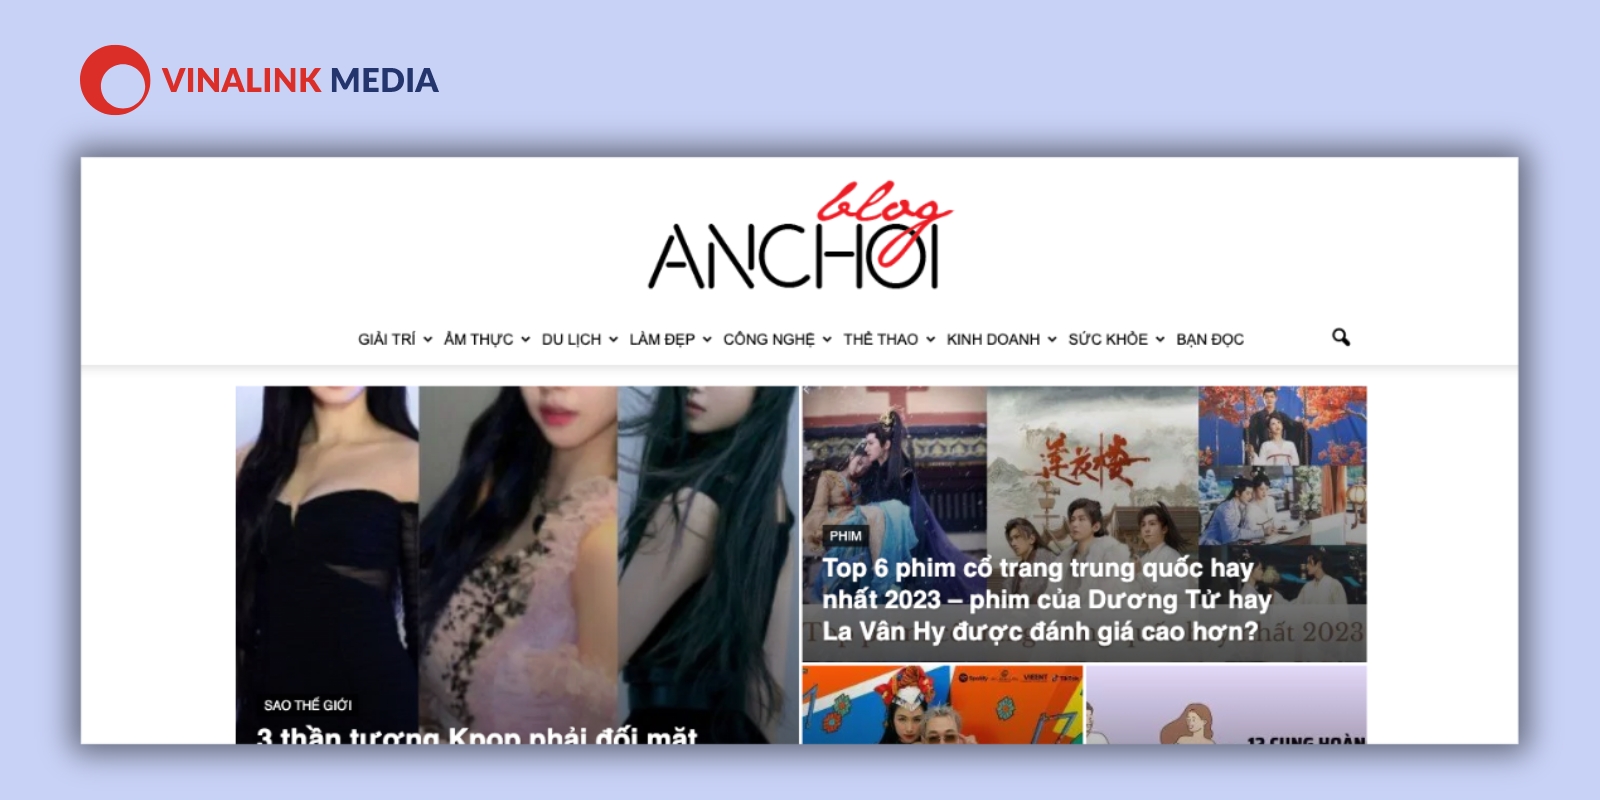 BlogAnChoi là một website chuyên về các lĩnh vực du lịch, thời gian, ăn uống, giải trí hay làm đẹp